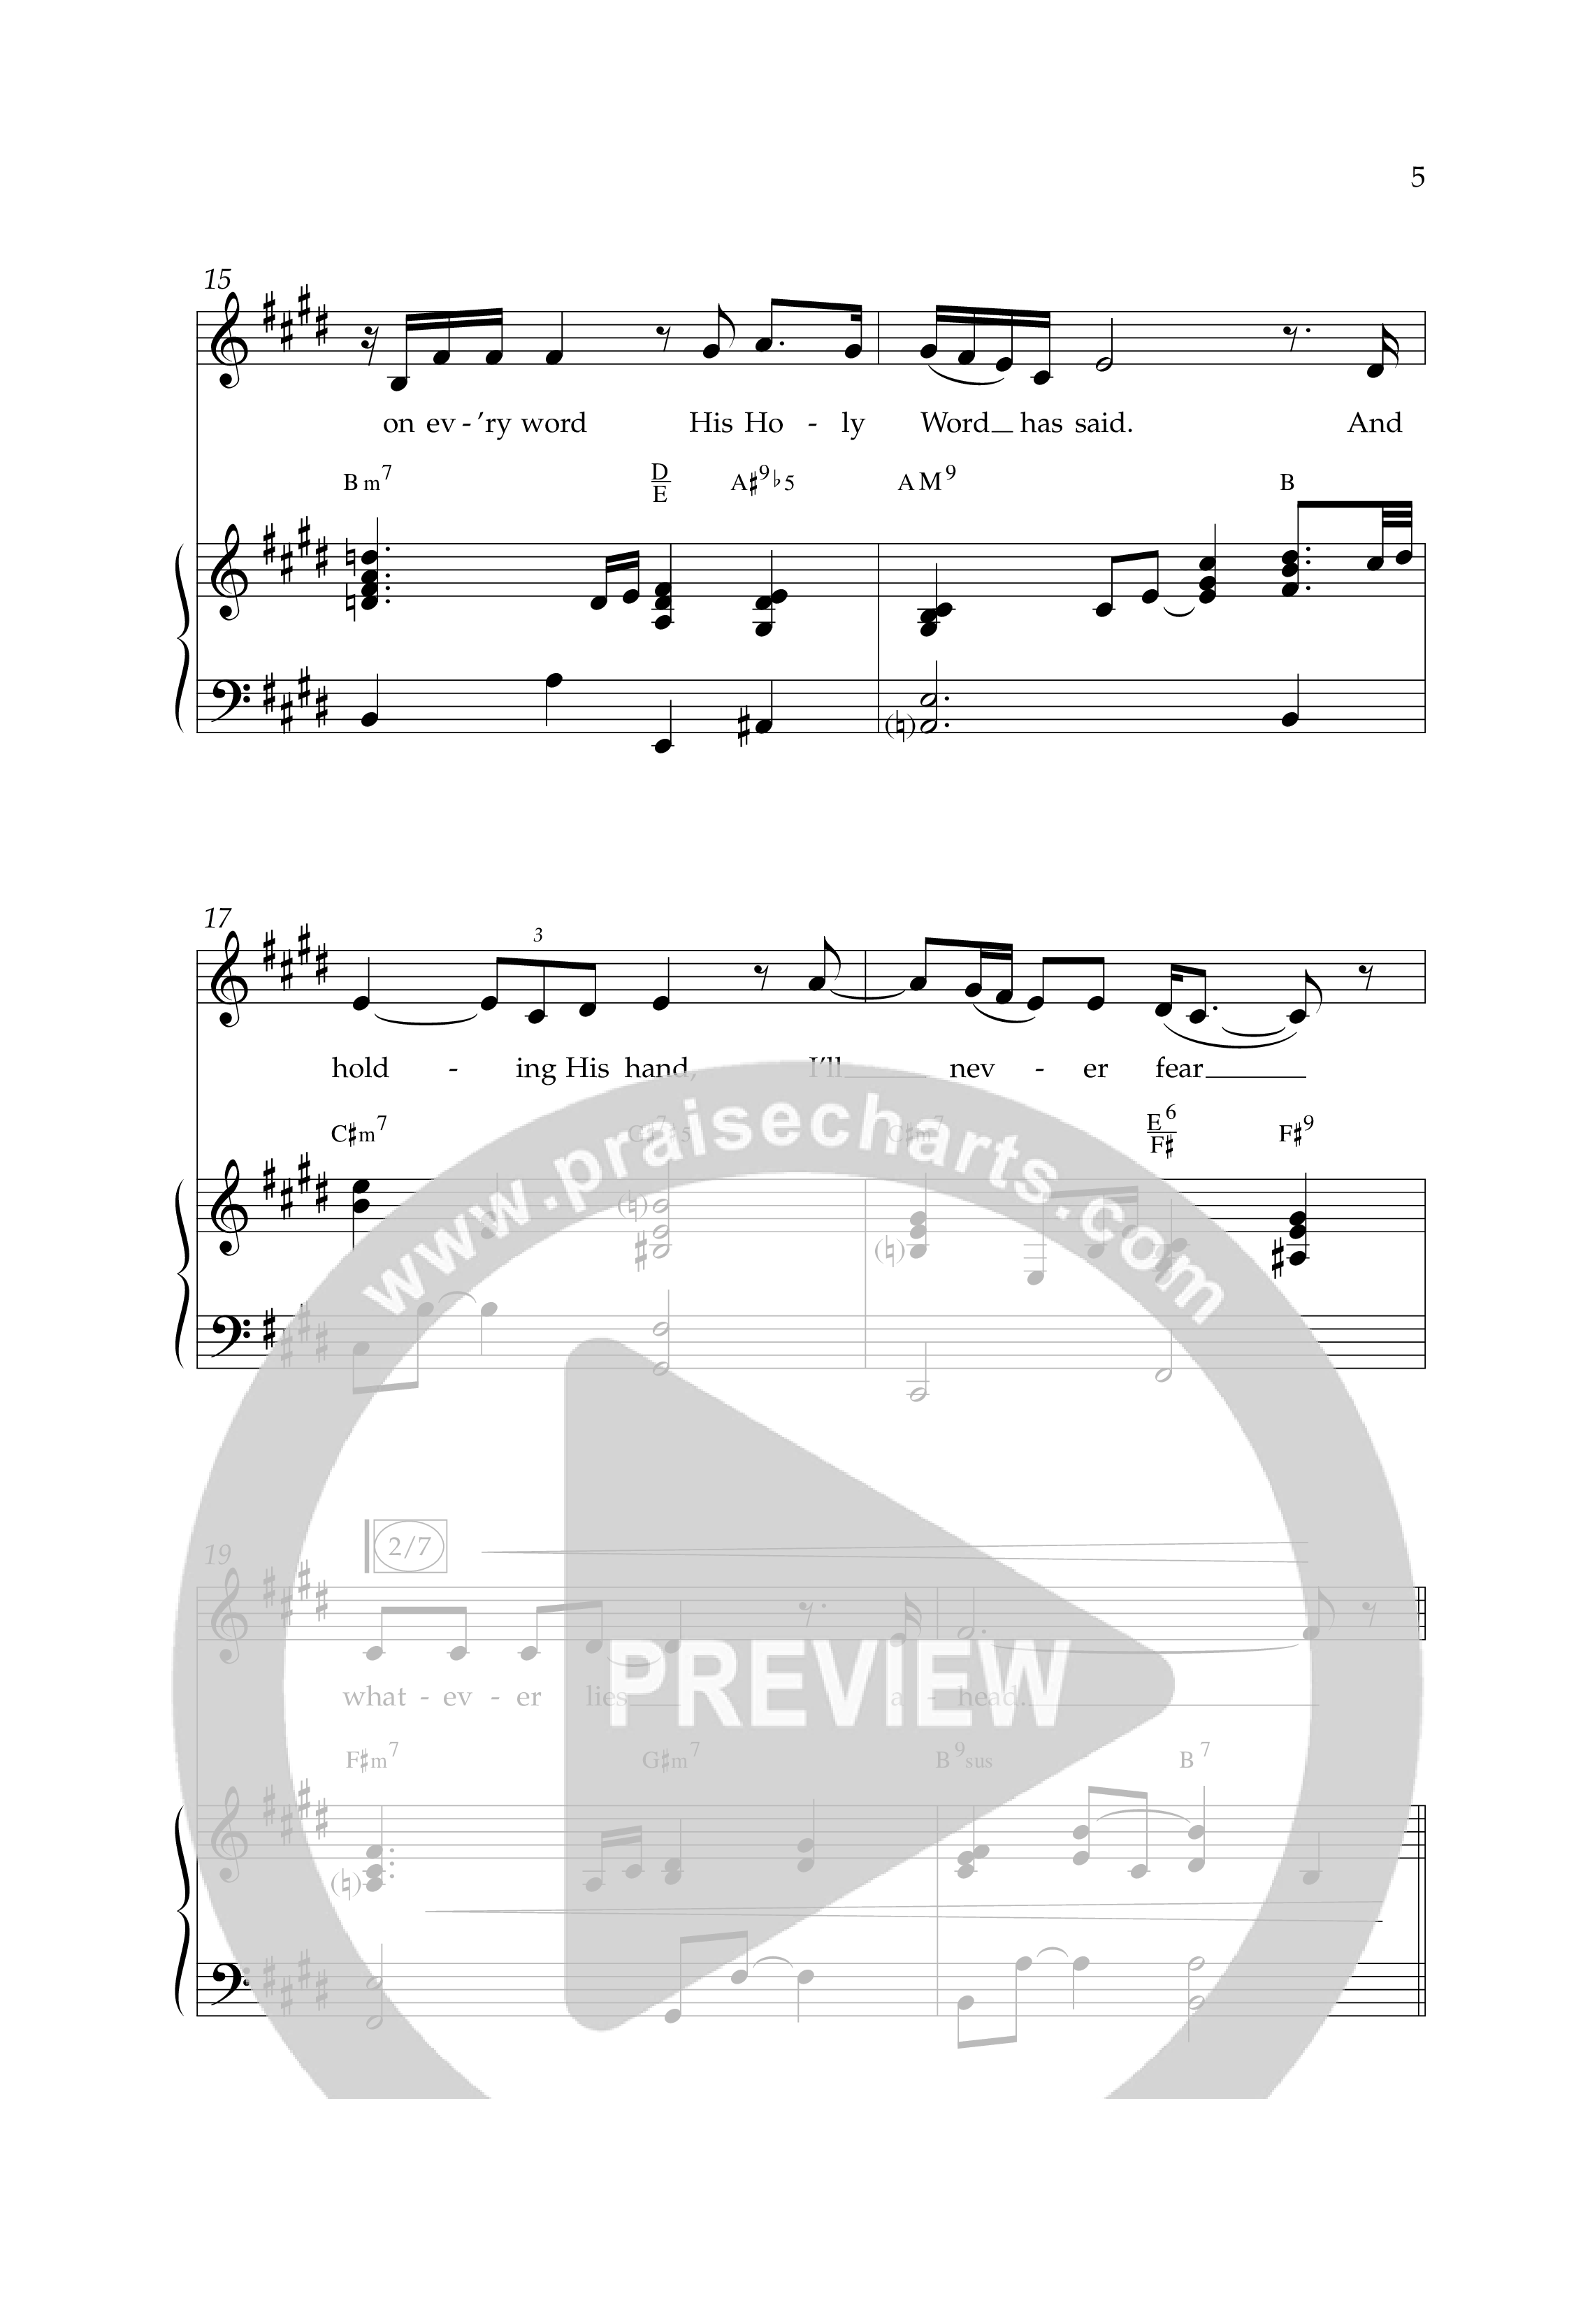 I'm Gonna Make It (Choral Anthem SATB) Anthem (SATB/Piano) (Lifeway Choral / Arr. J. Daniel Smith)